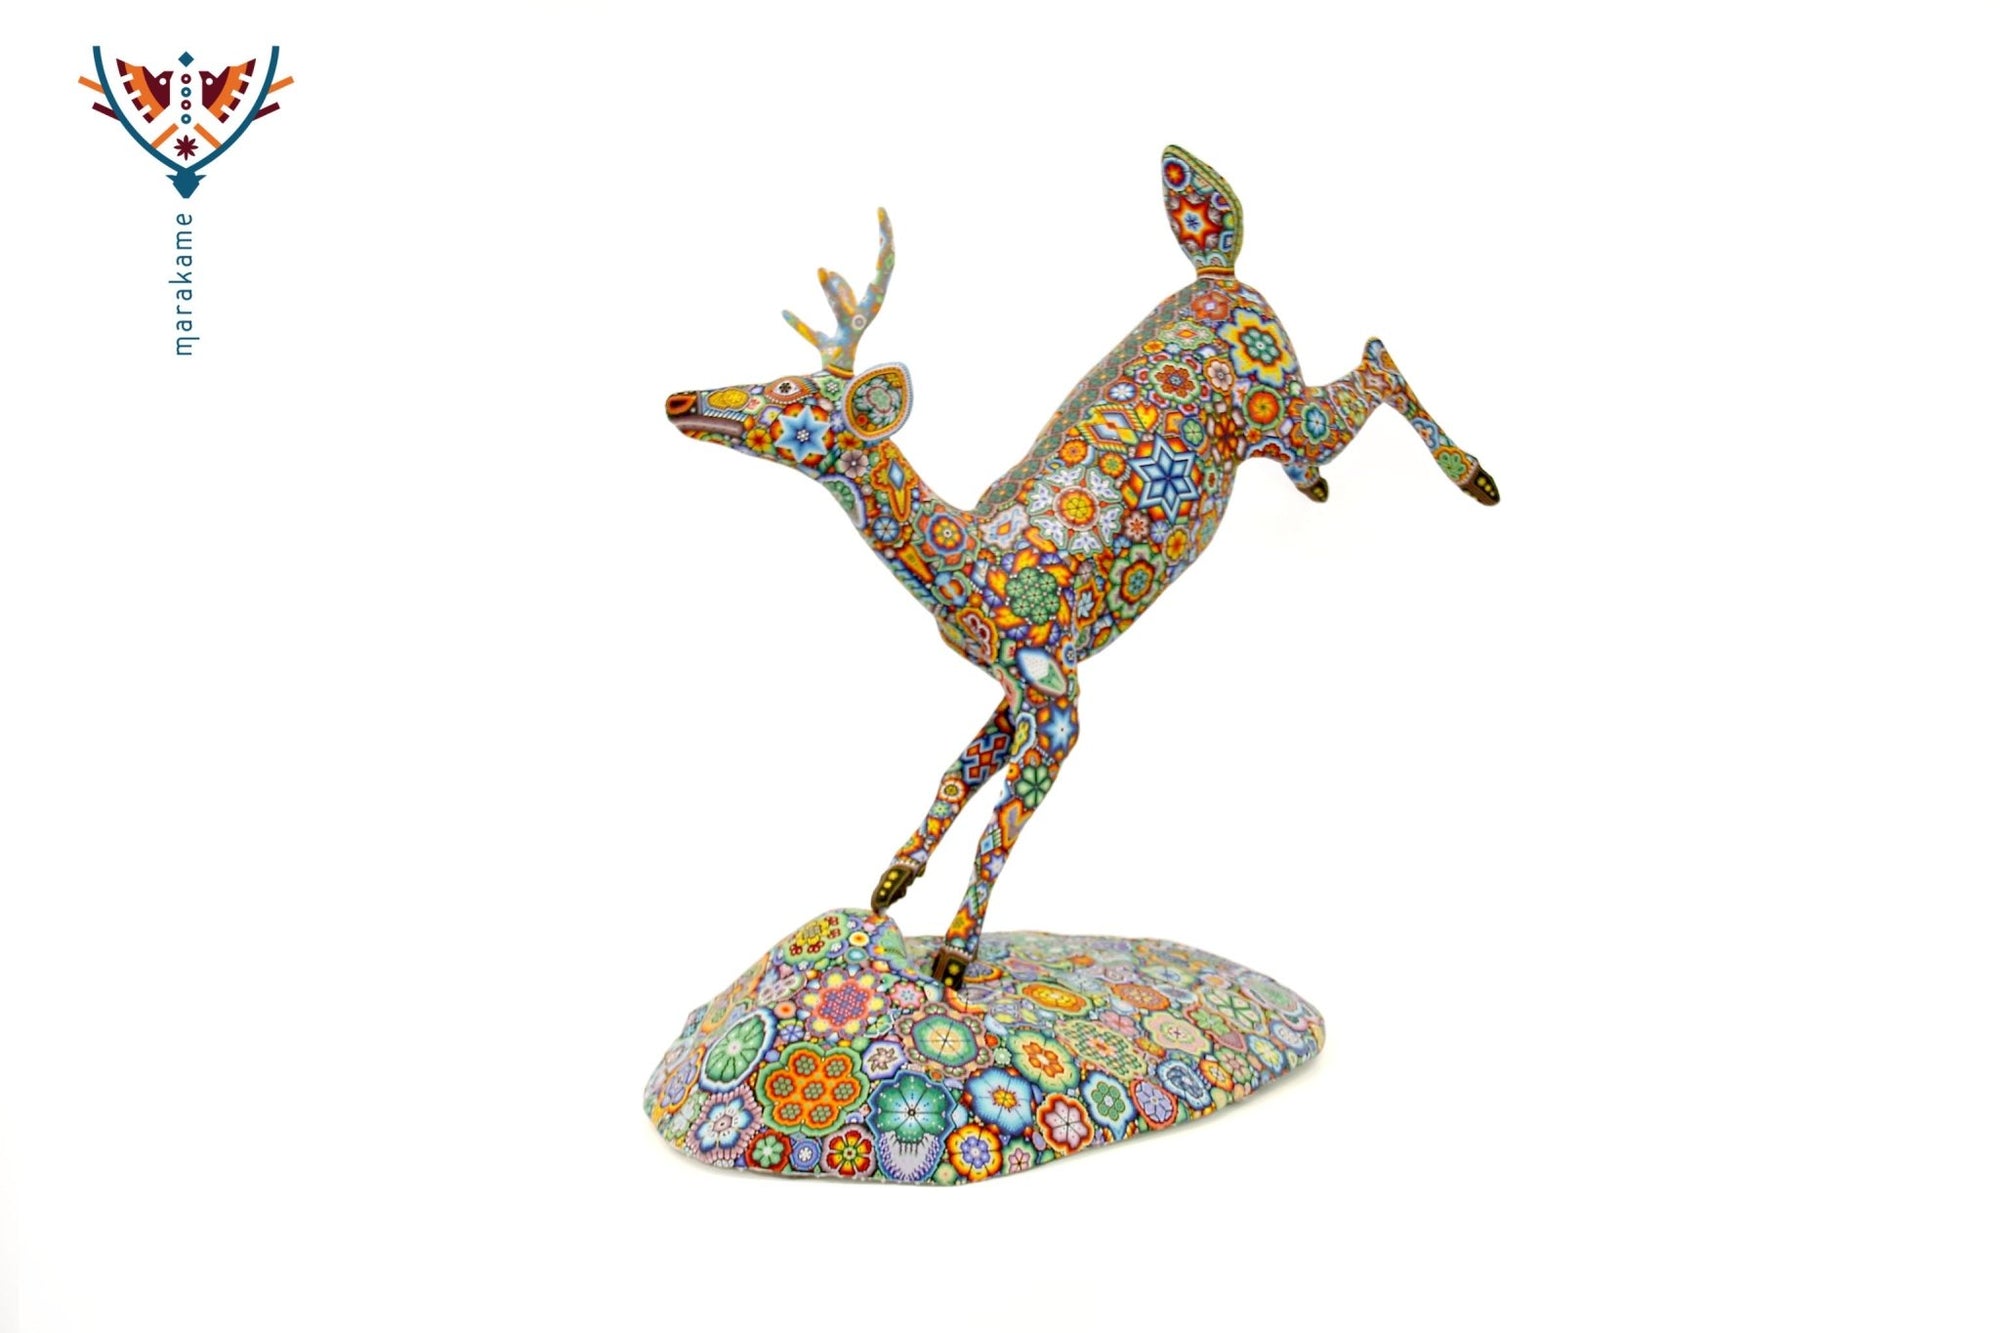 ウイチョル族アート彫刻 - 跳躍する鹿 - Maxa utsik+kame - ウイチョル族アート - マラカメ